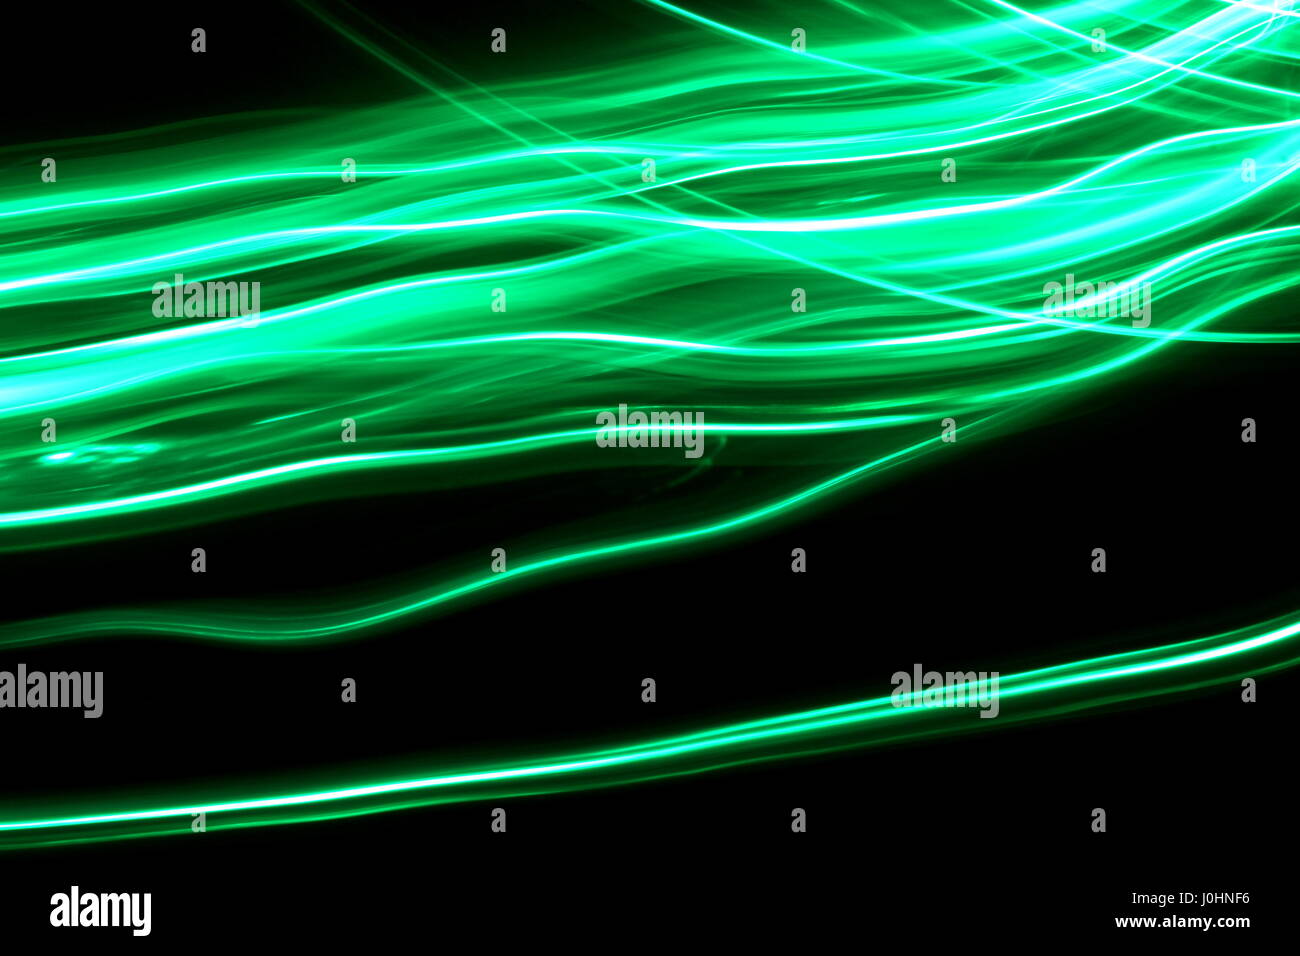 Grünes Licht Malerei Fotografie, lange Belichtung Foto von Neon Grün bunte Wellen auf einem schwarzen Hintergrund. Abstrakte Licht Bewegung. Stockfoto